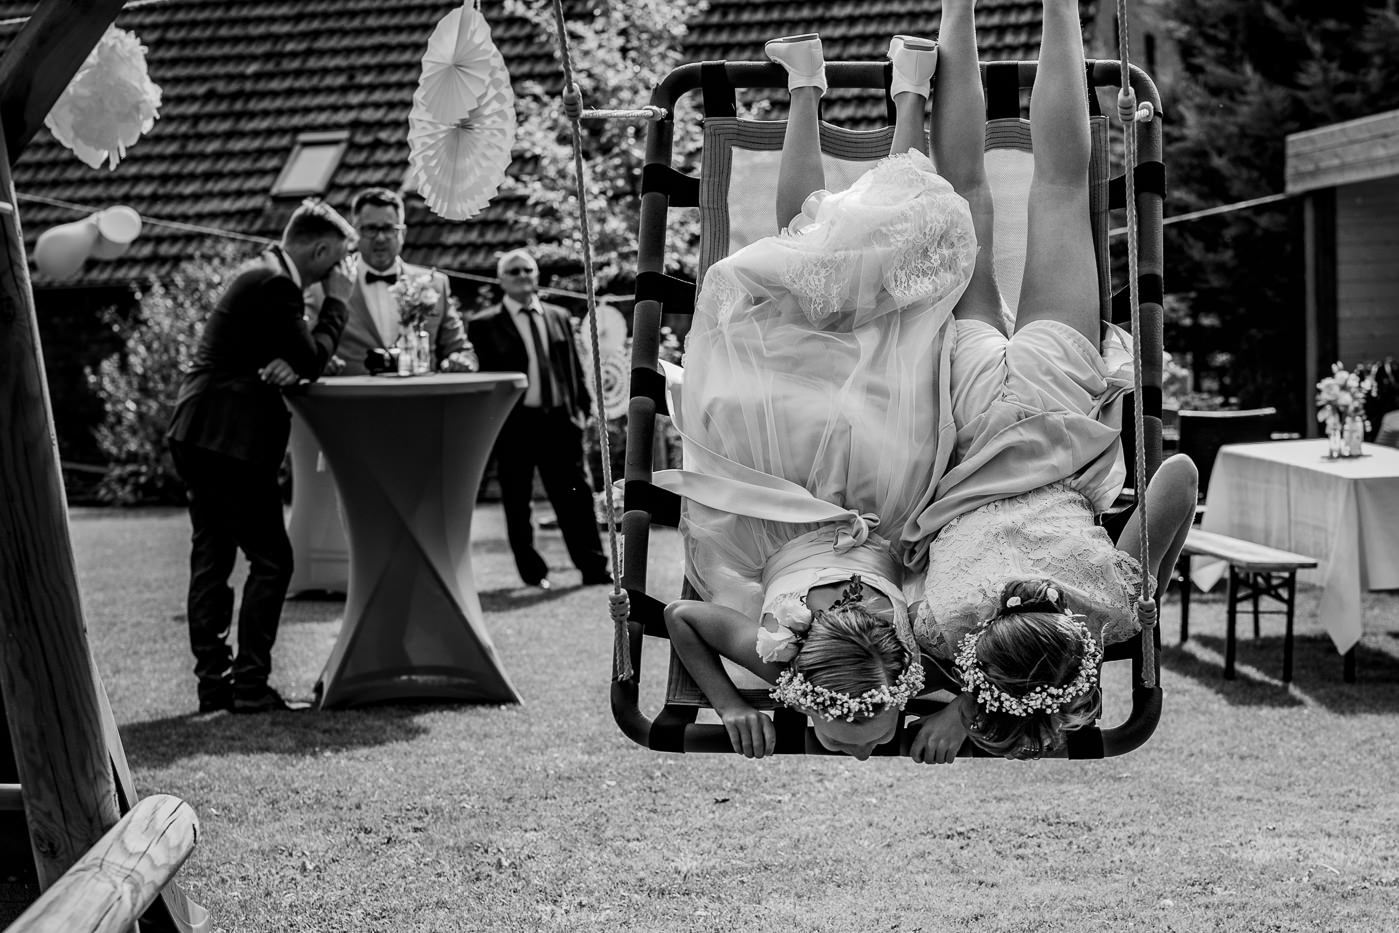 Hochzeitsfotografin-Hagen-Hochzeitsfotograf-Ruhrgebiet-lumoid-Nadine-Lotze-Hagen-Hochzeitsreportage-007a-23-Bueckeburg-DIY-Gartenparty-Kinder-Schaukel